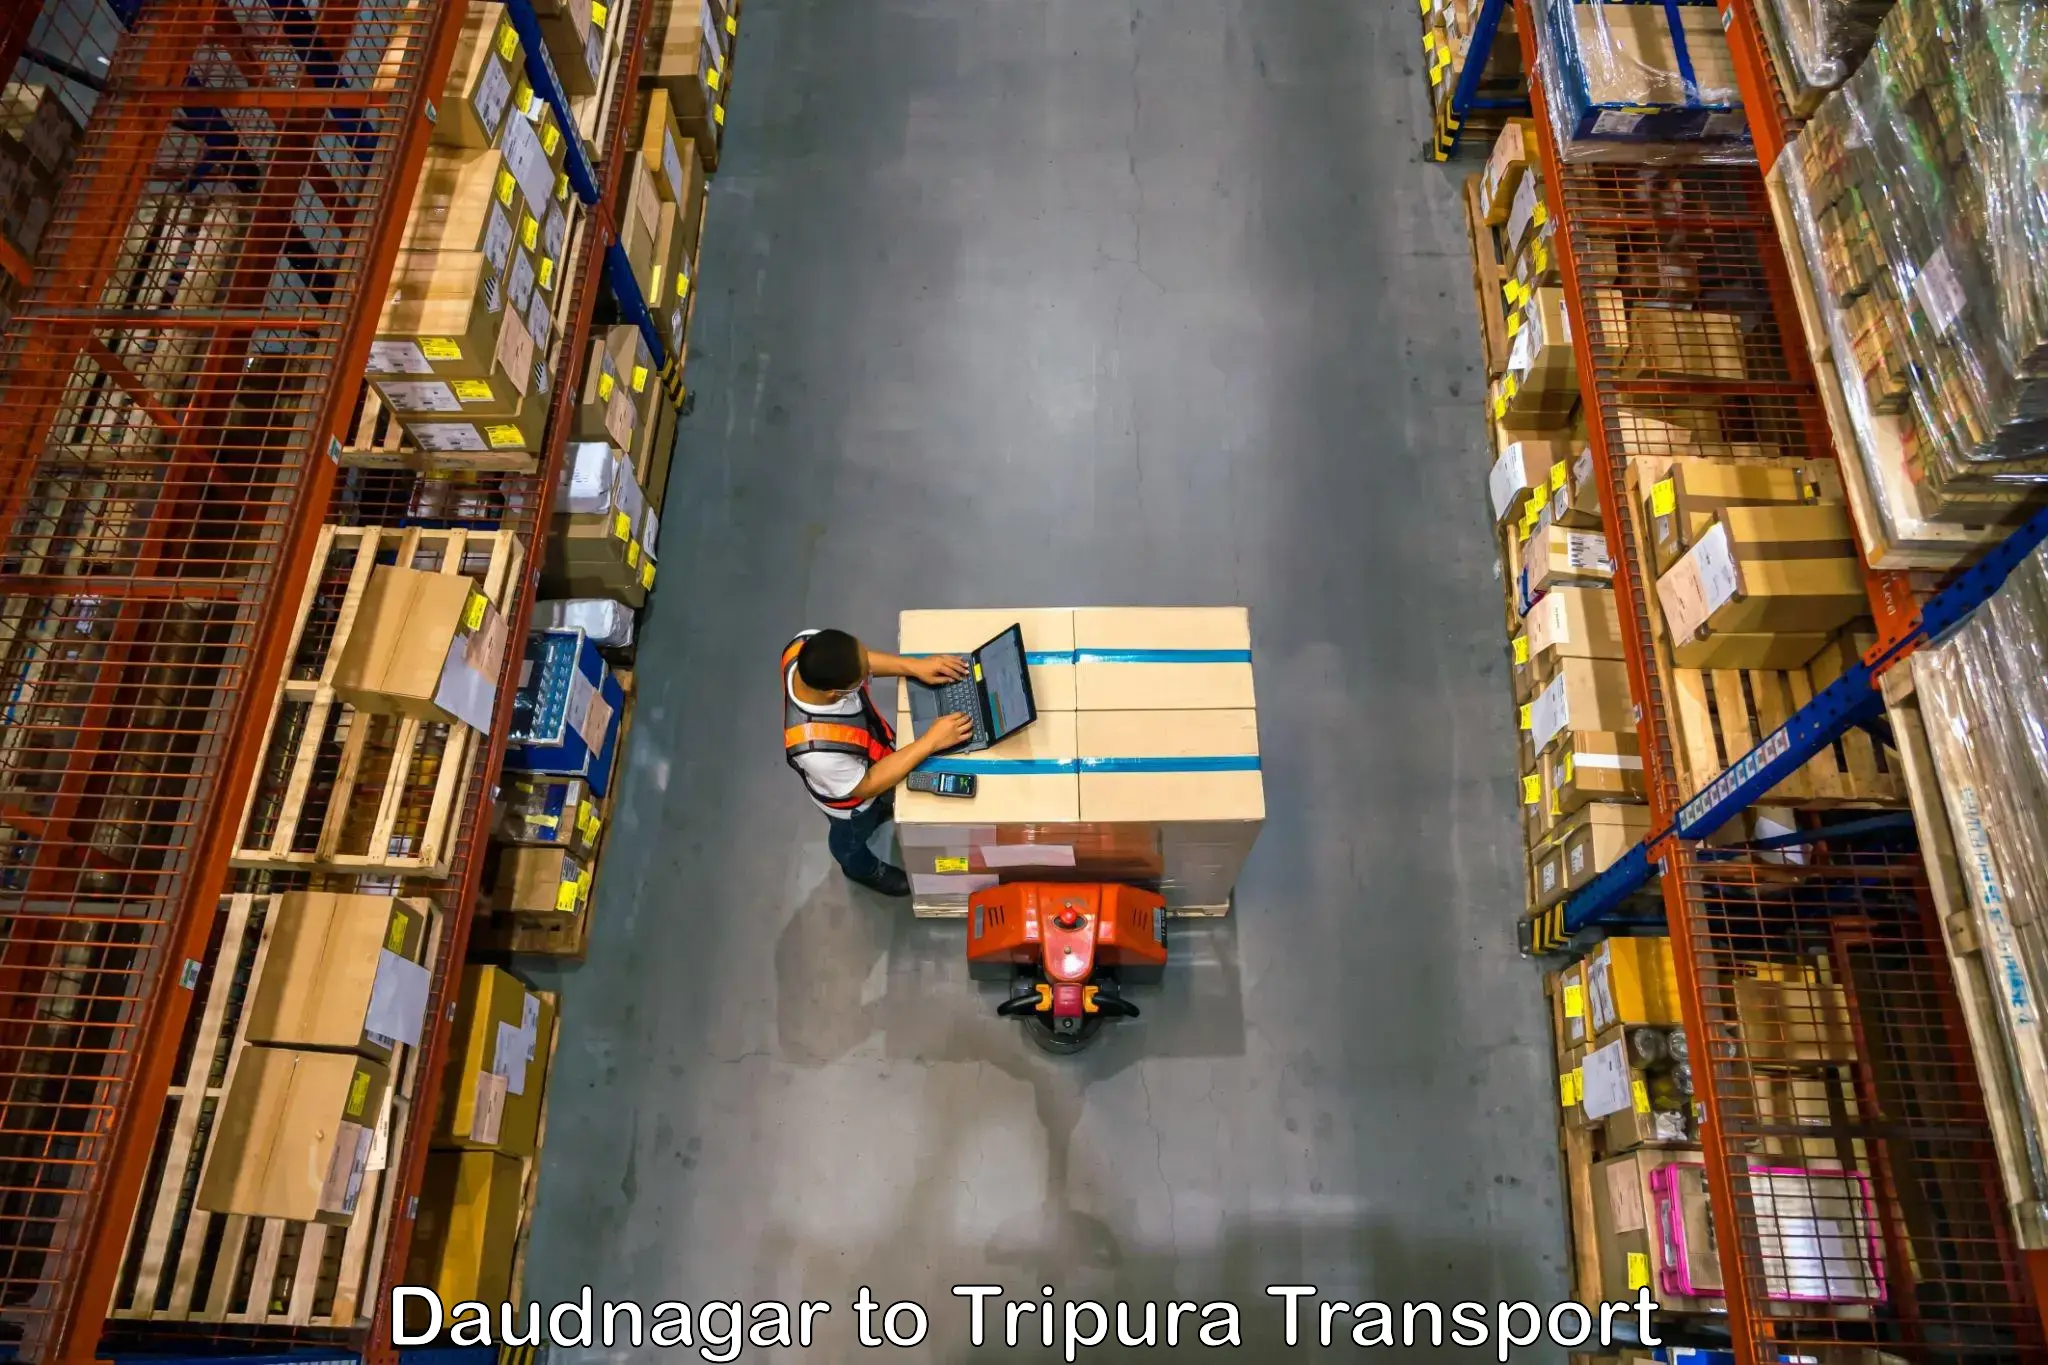 Commercial transport service Daudnagar to Santirbazar